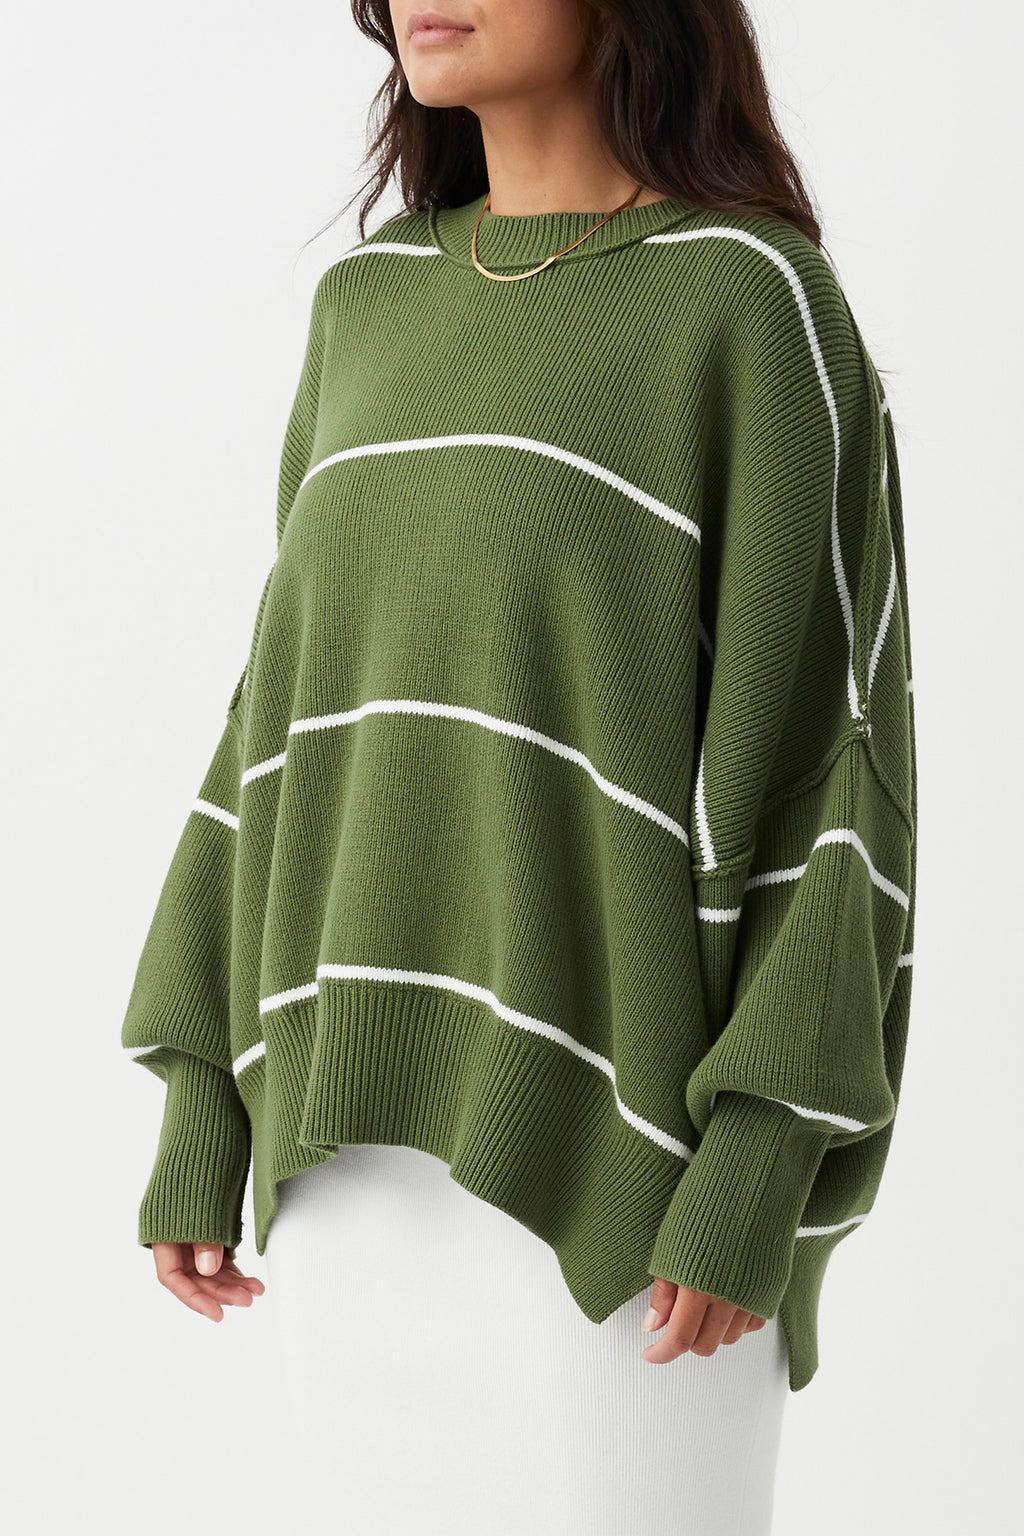 Harper Stripe Organic Knit Sweater - Caper & Cream